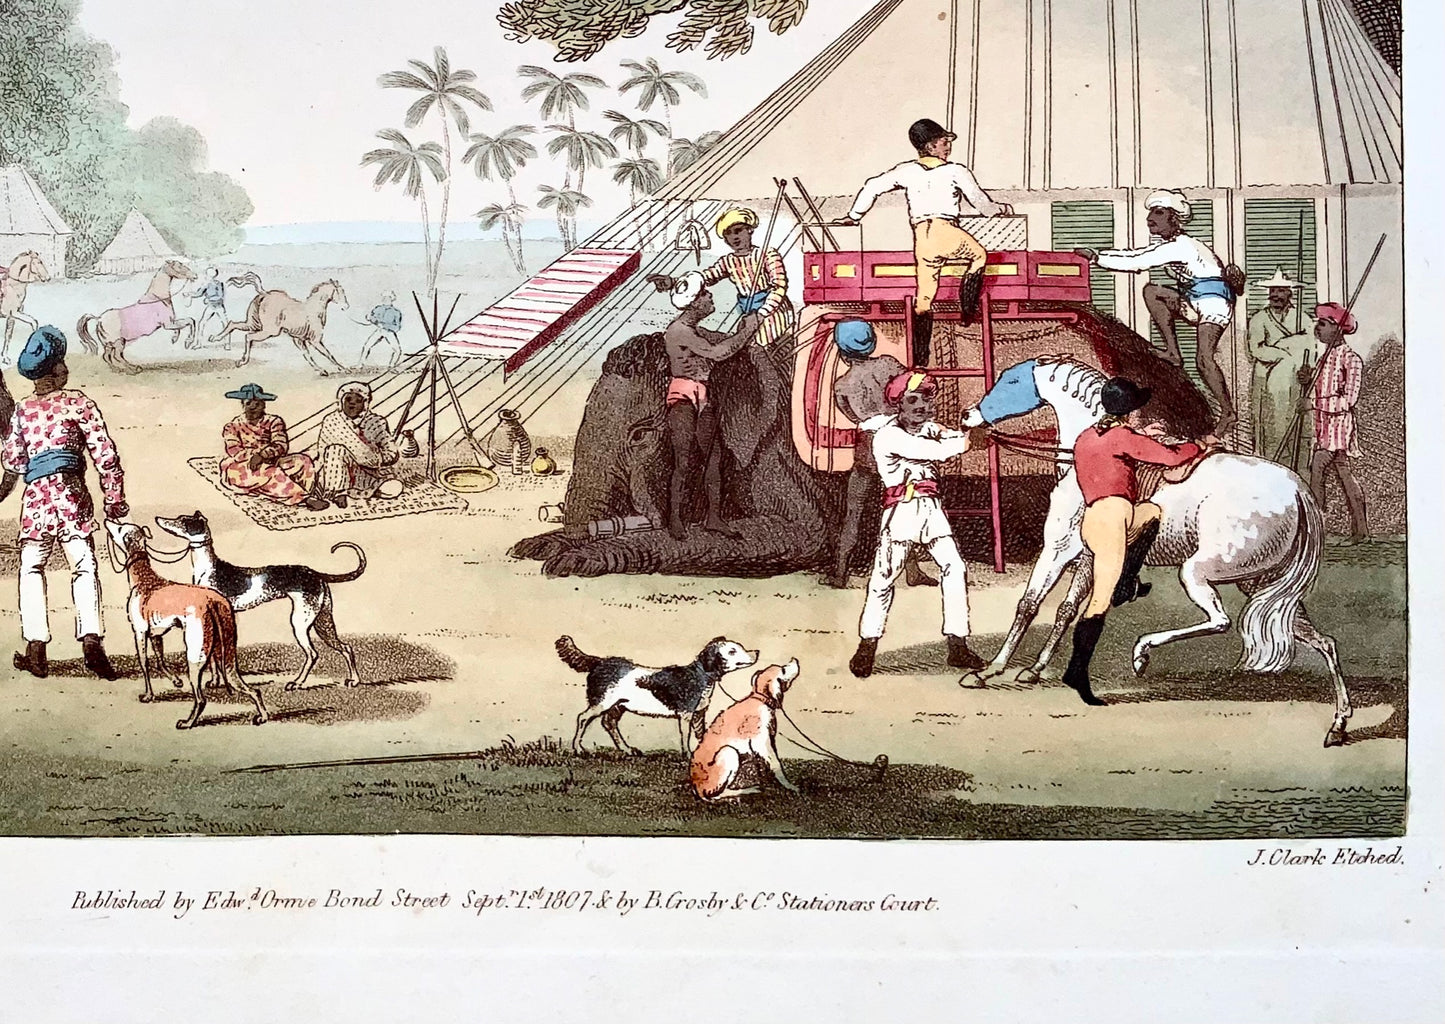 1807 ème. Williamson, Préparations pour une chasse, aquatinte coloriée à la main, sports, Inde, topographie étrangère